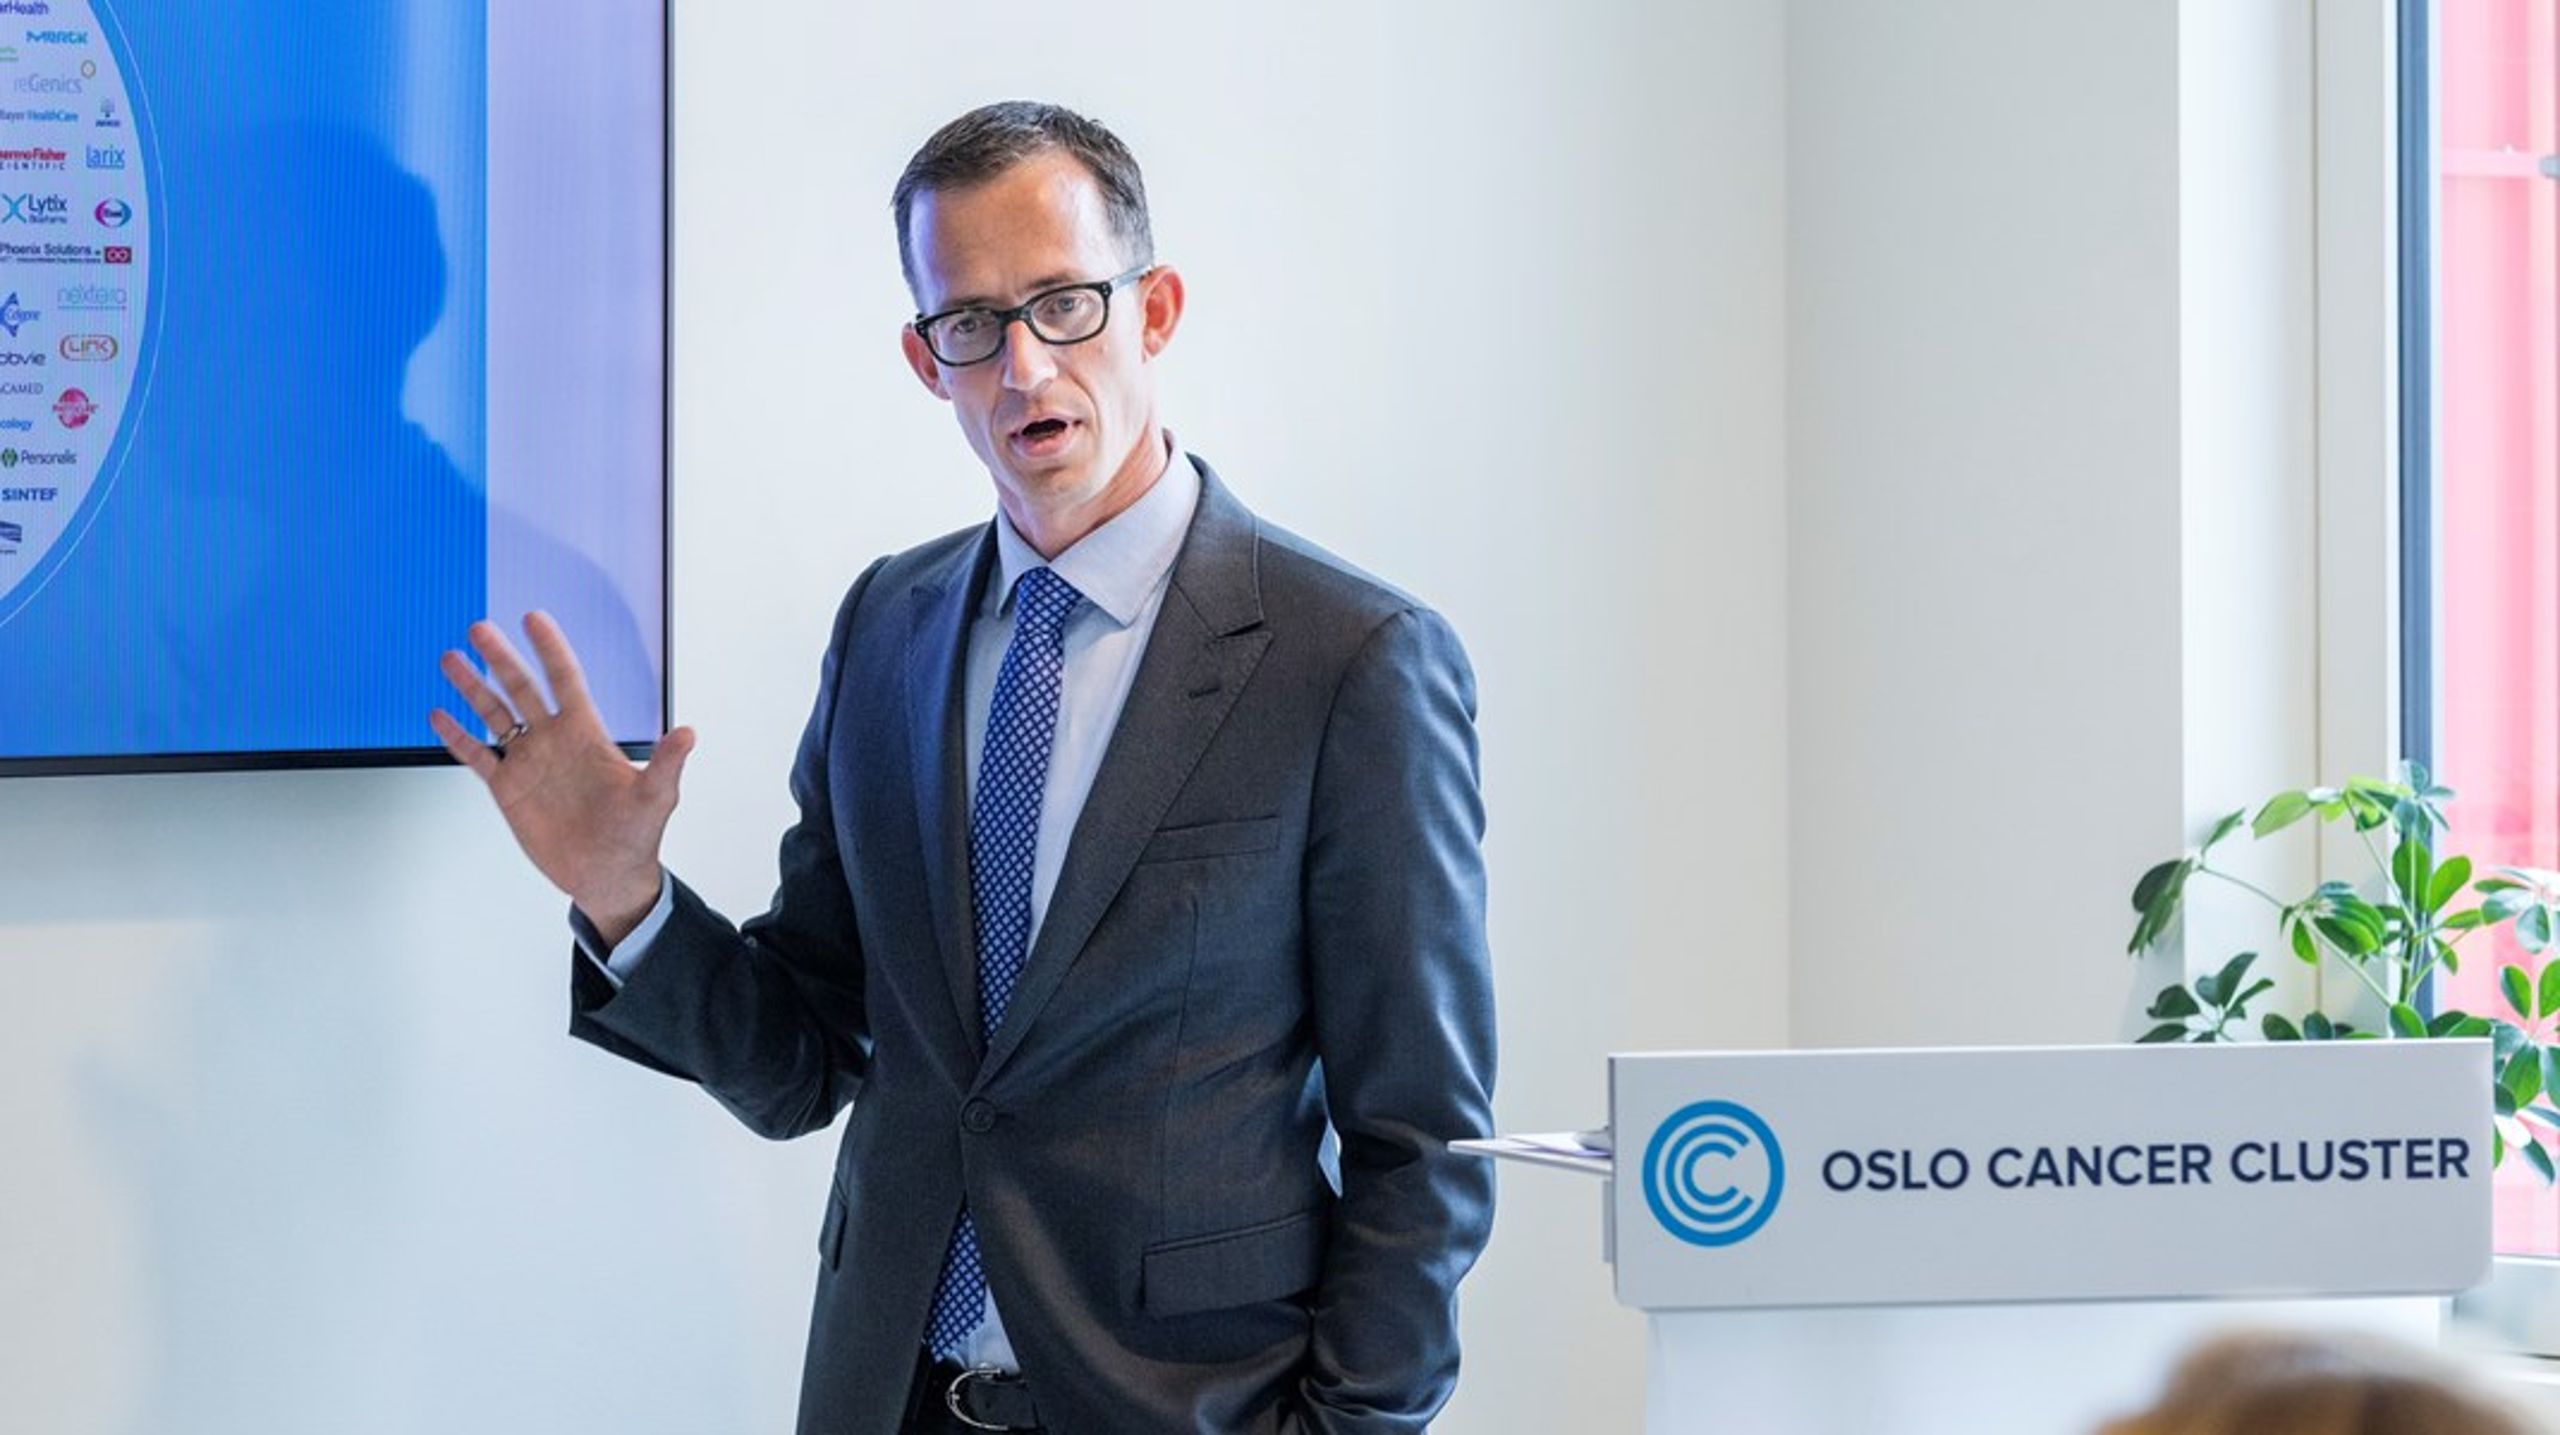 Daglig leder i Oslo Cancer Cluster, Ketil Widerberg, mener Norge har gode sjanser til å få midler til forskning og innvoasjon fra EU.